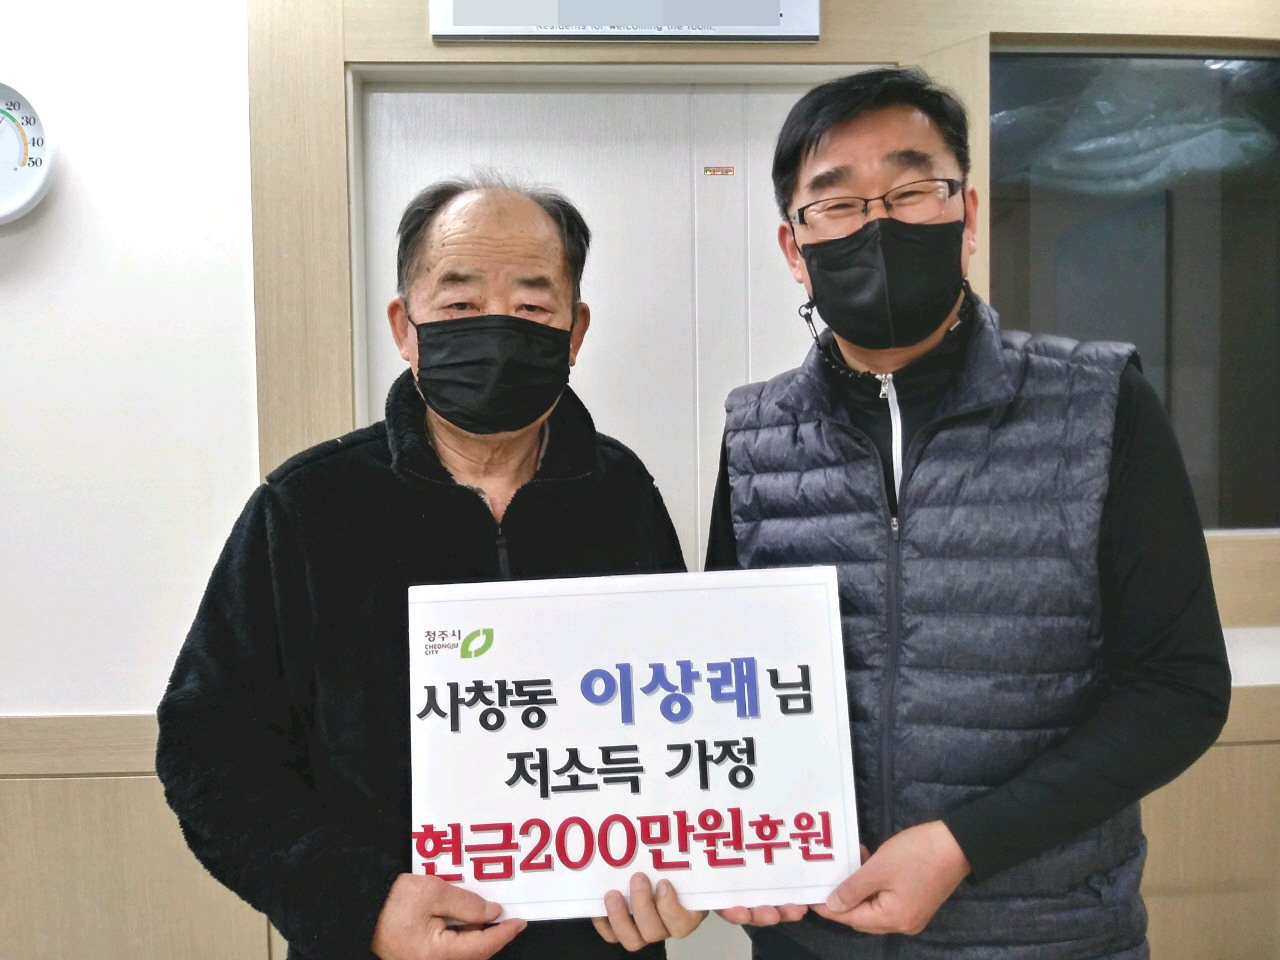 청주시 서원구 사창동은 주민 이상래(76)씨로부터 200만원의 후원금을 기탁받았다고 13일 밝혔다.